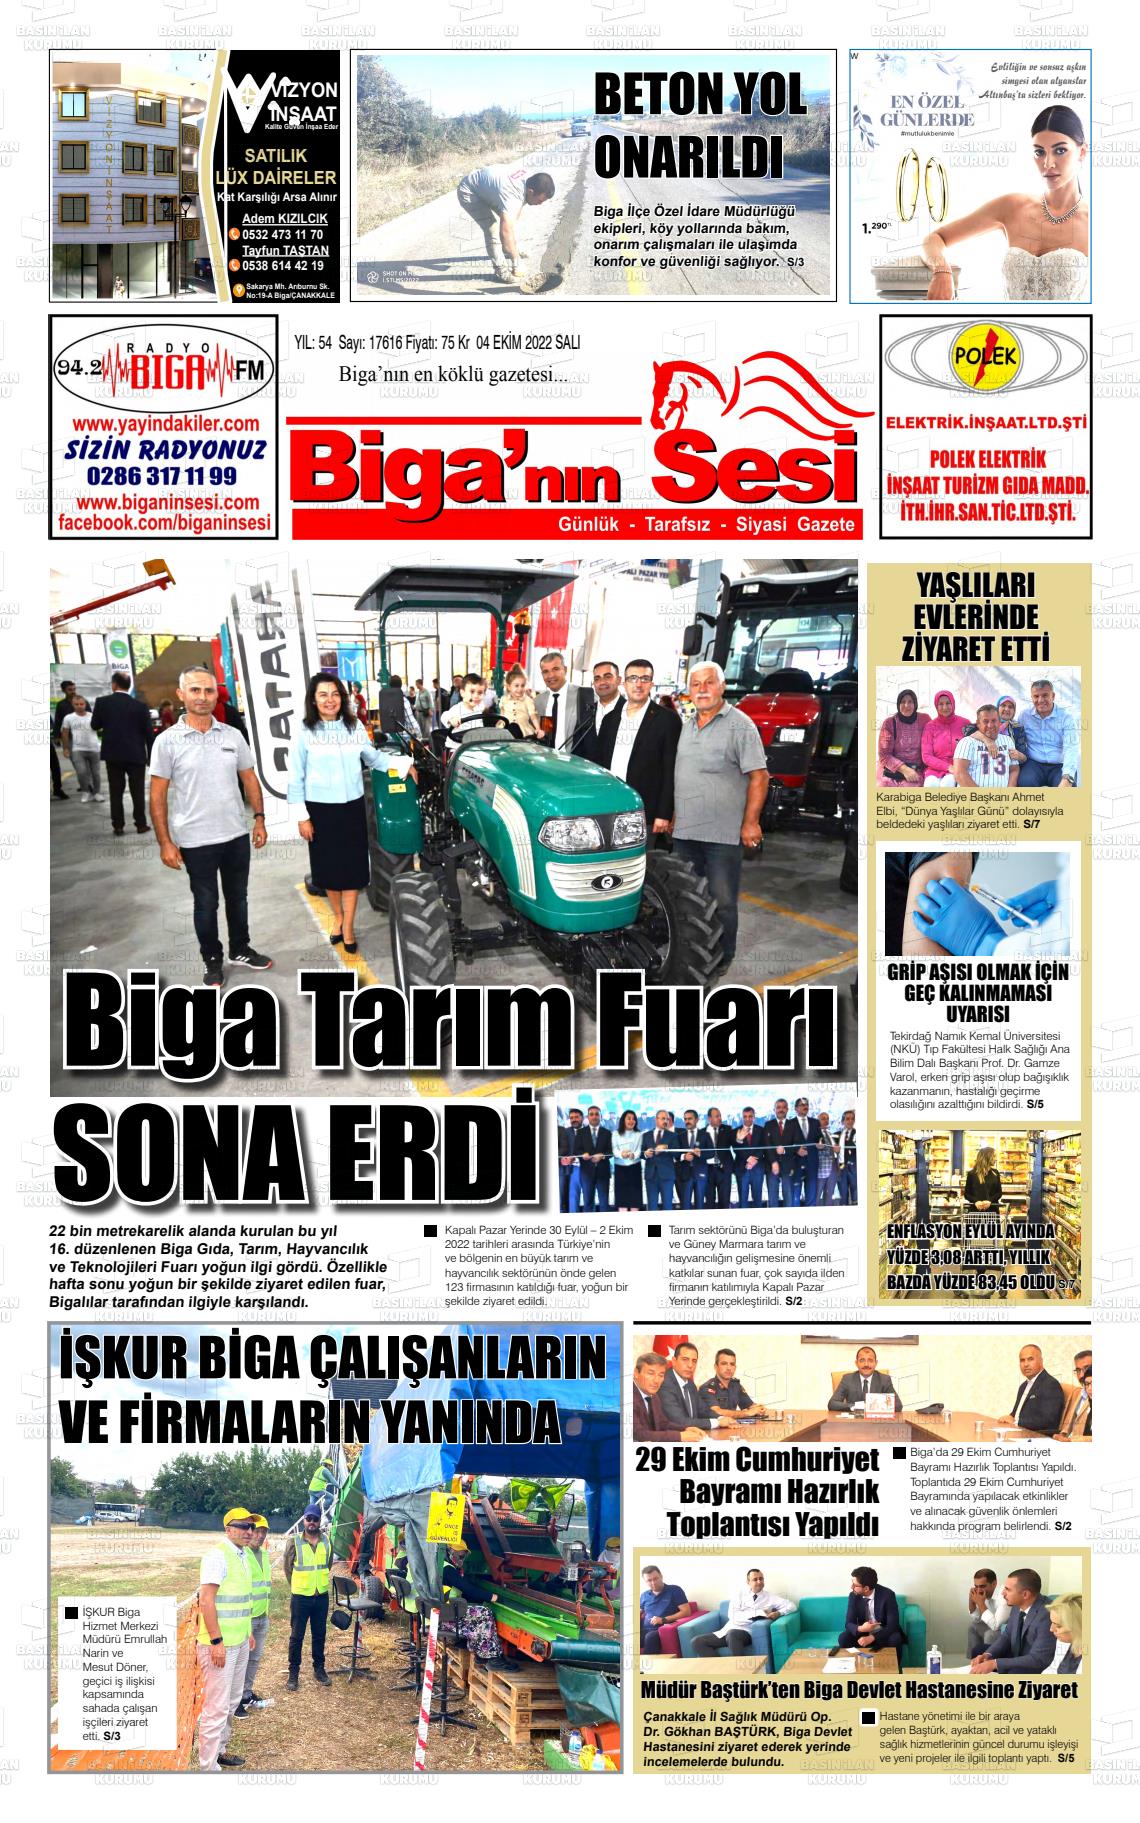 04 Ekim 2022 Biga'nın Sesi Gazete Manşeti